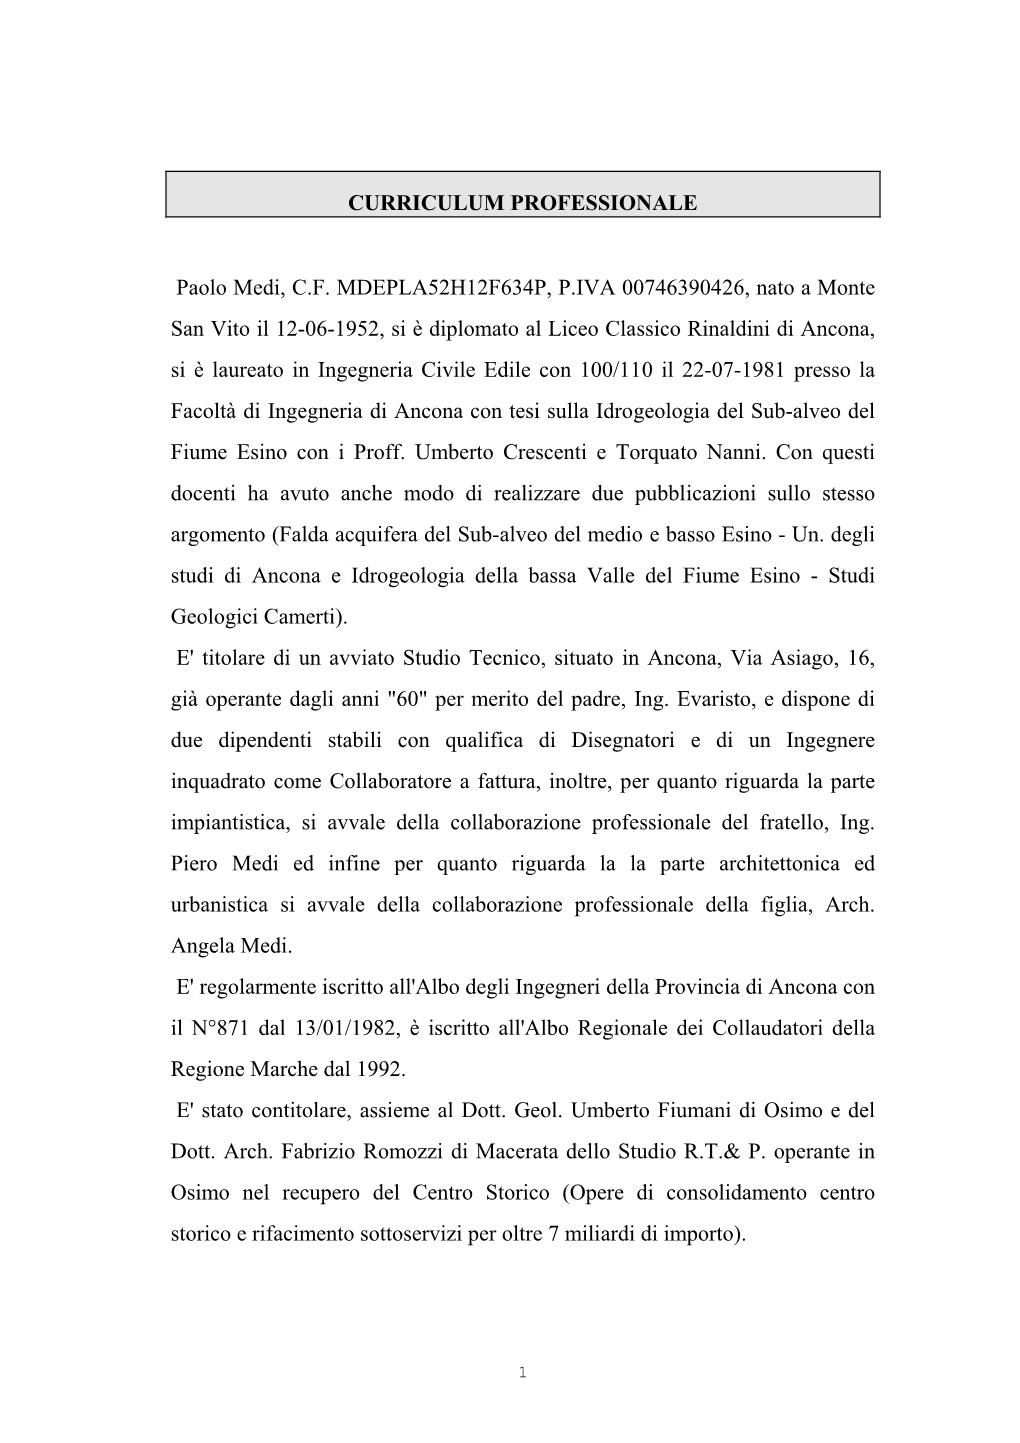 CURRICULUM PROFESSIONALE Paolo Medi, C.F. MDEPLA52H12F634P, P.IVA 00746390426, Nato a Monte San Vito Il 12-06-1952, Si È Diplom